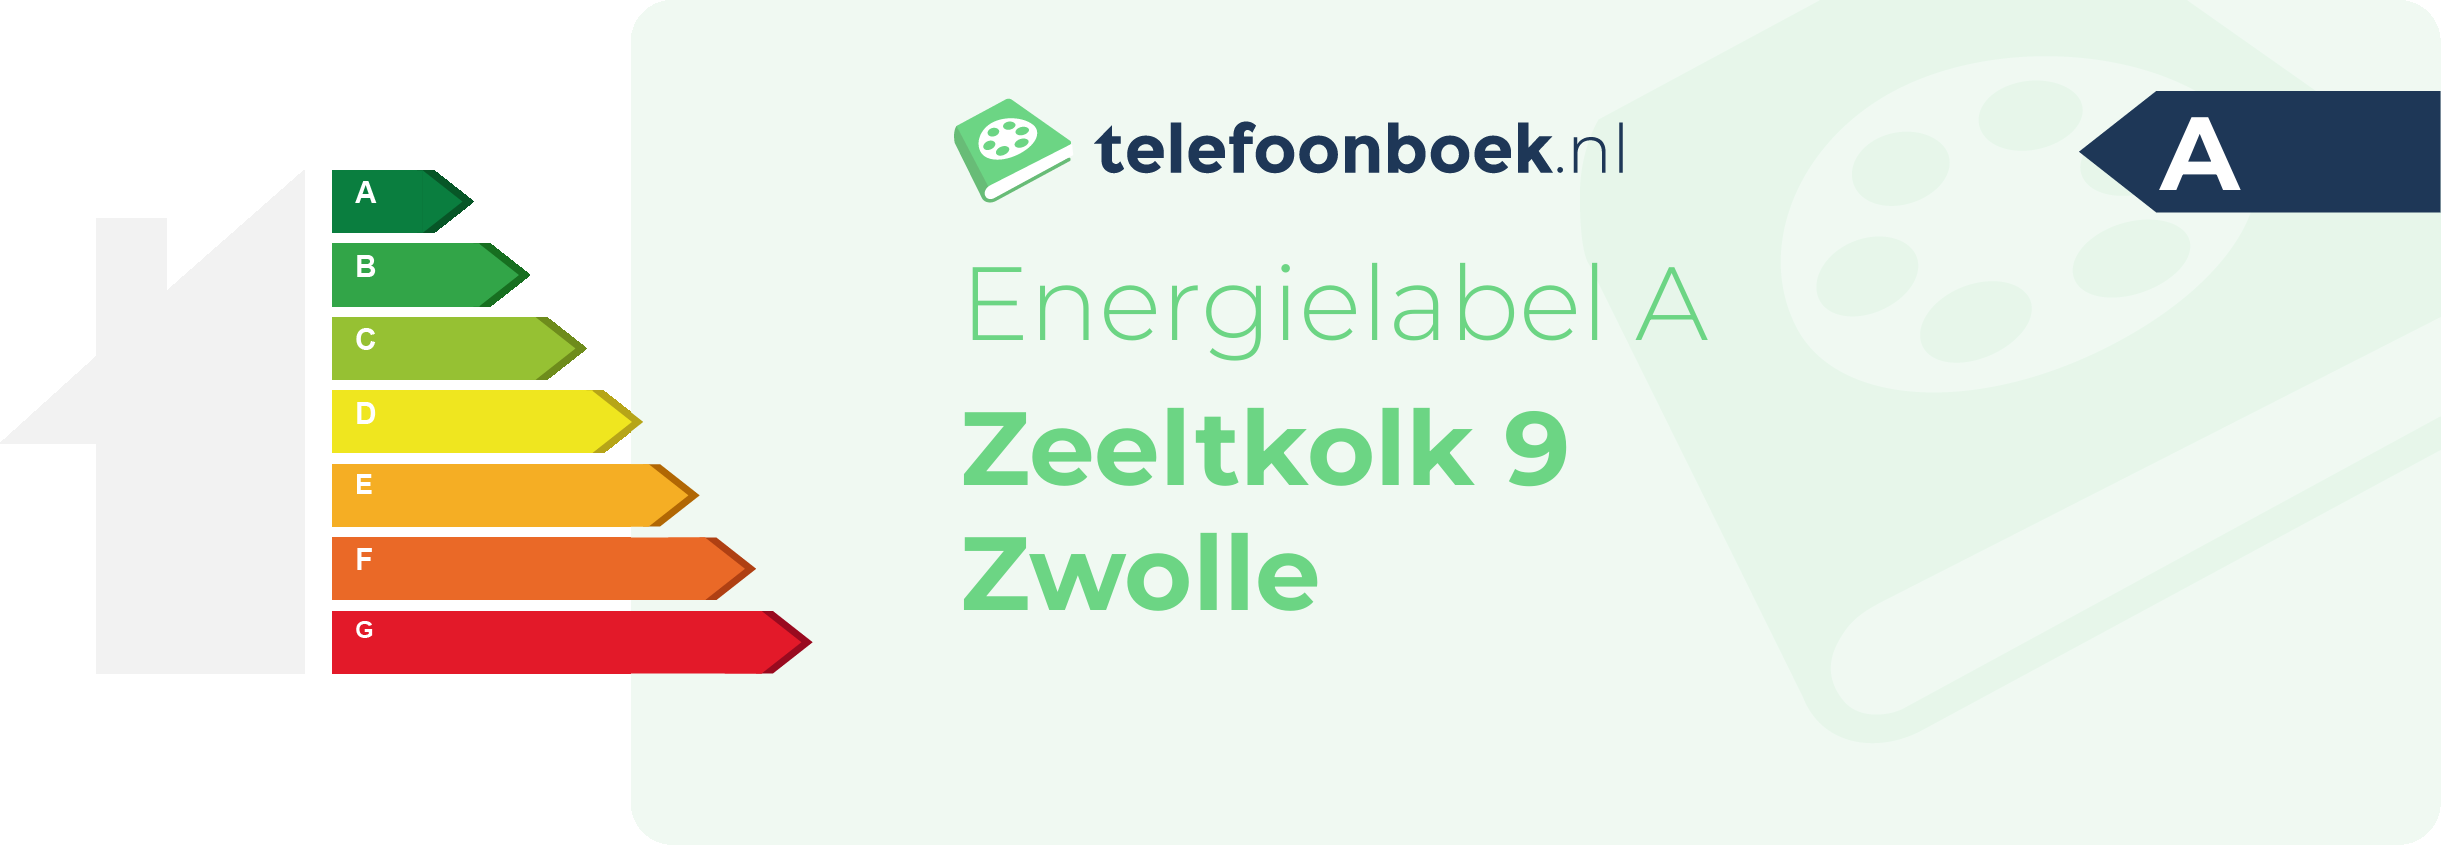 Energielabel Zeeltkolk 9 Zwolle